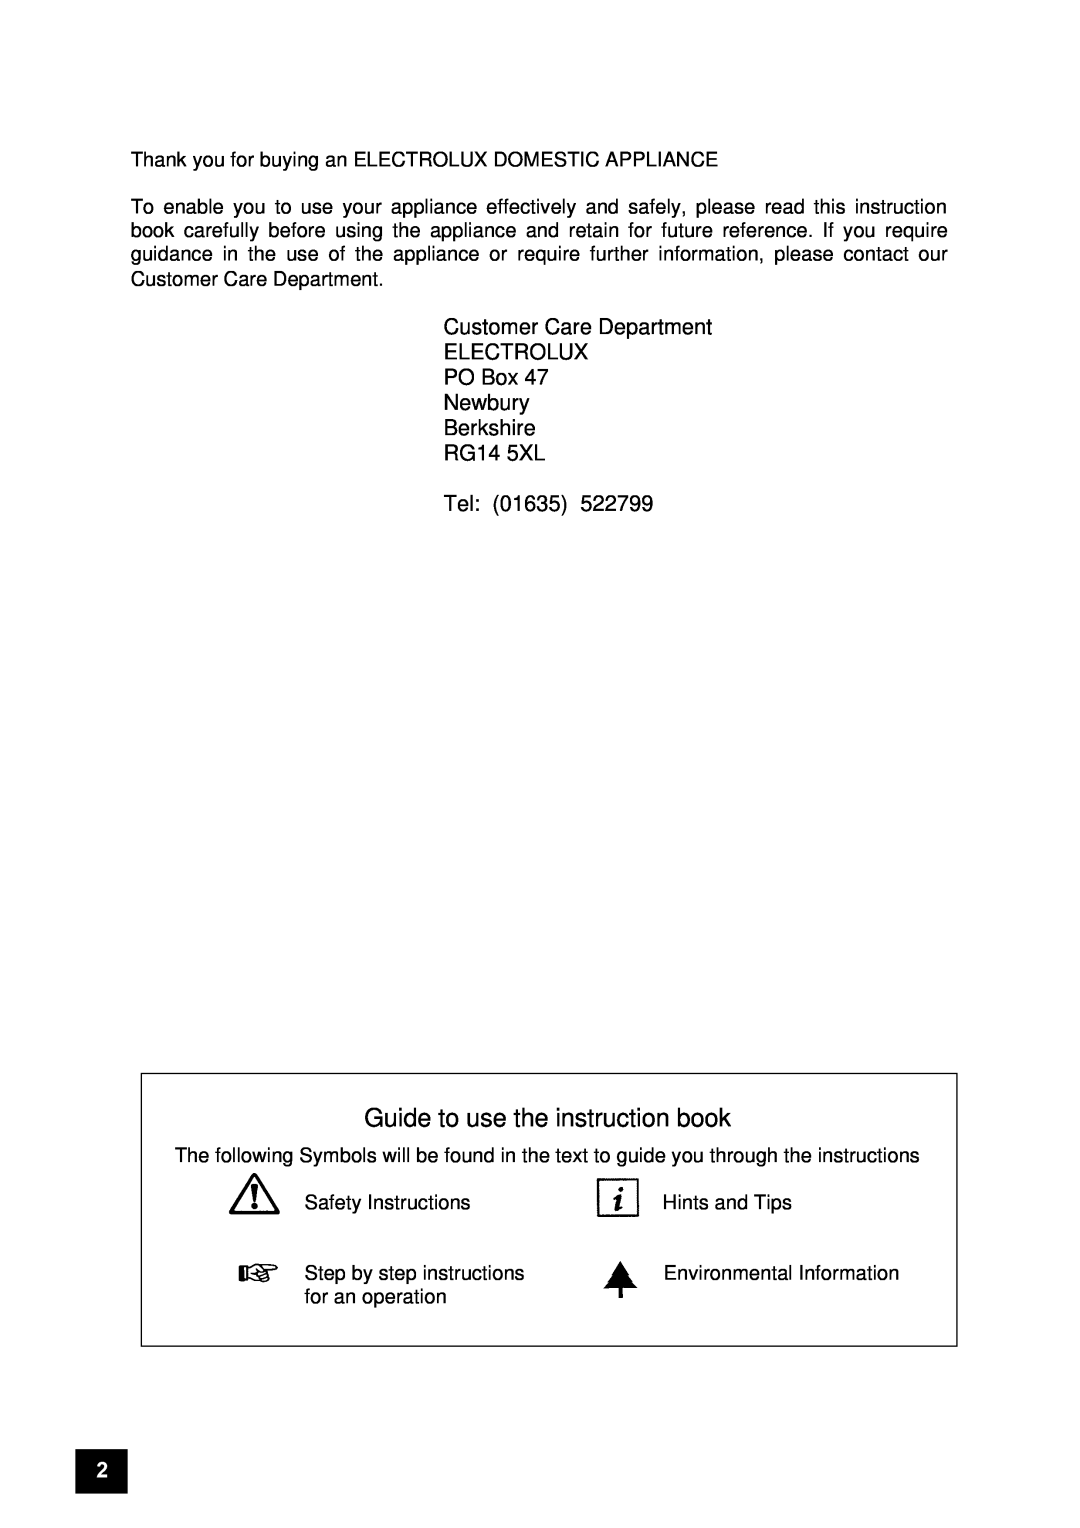 Electrolux EU 6047T / BU, EU 6047T / GR, EU 6047T / YE instruction manual Guide to use the instruction book, Tel 01635 